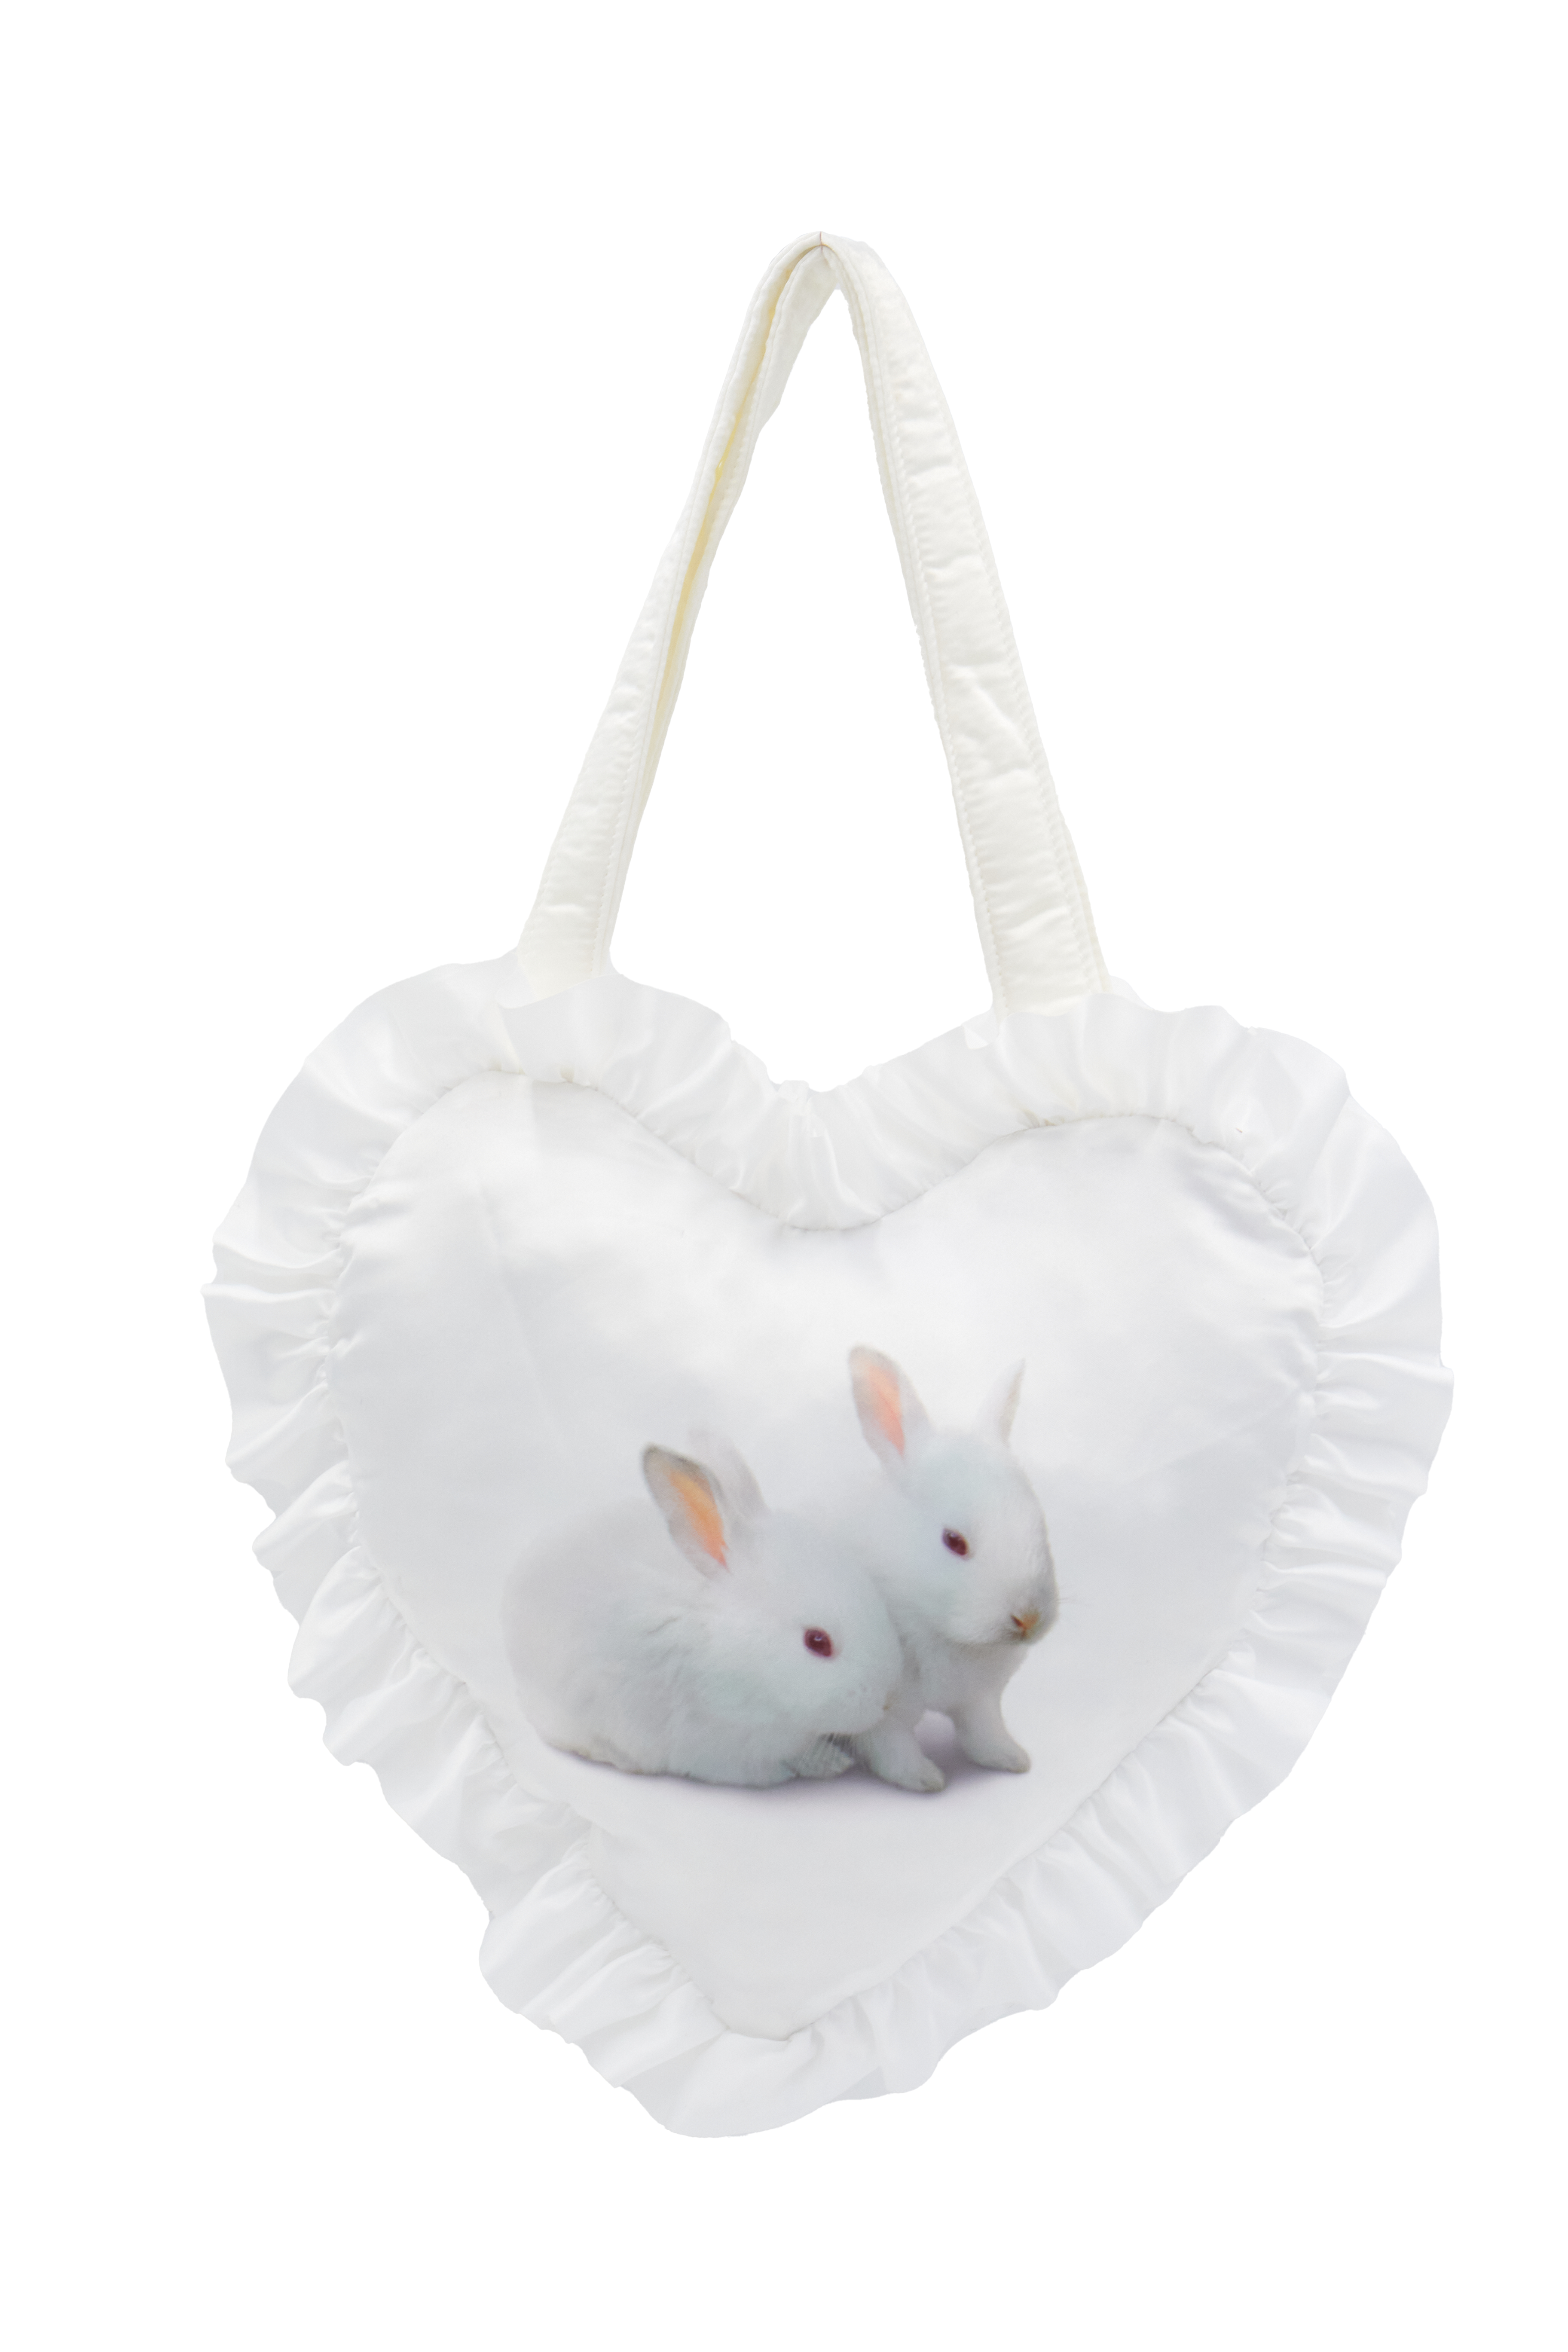 La borsa del coniglietto